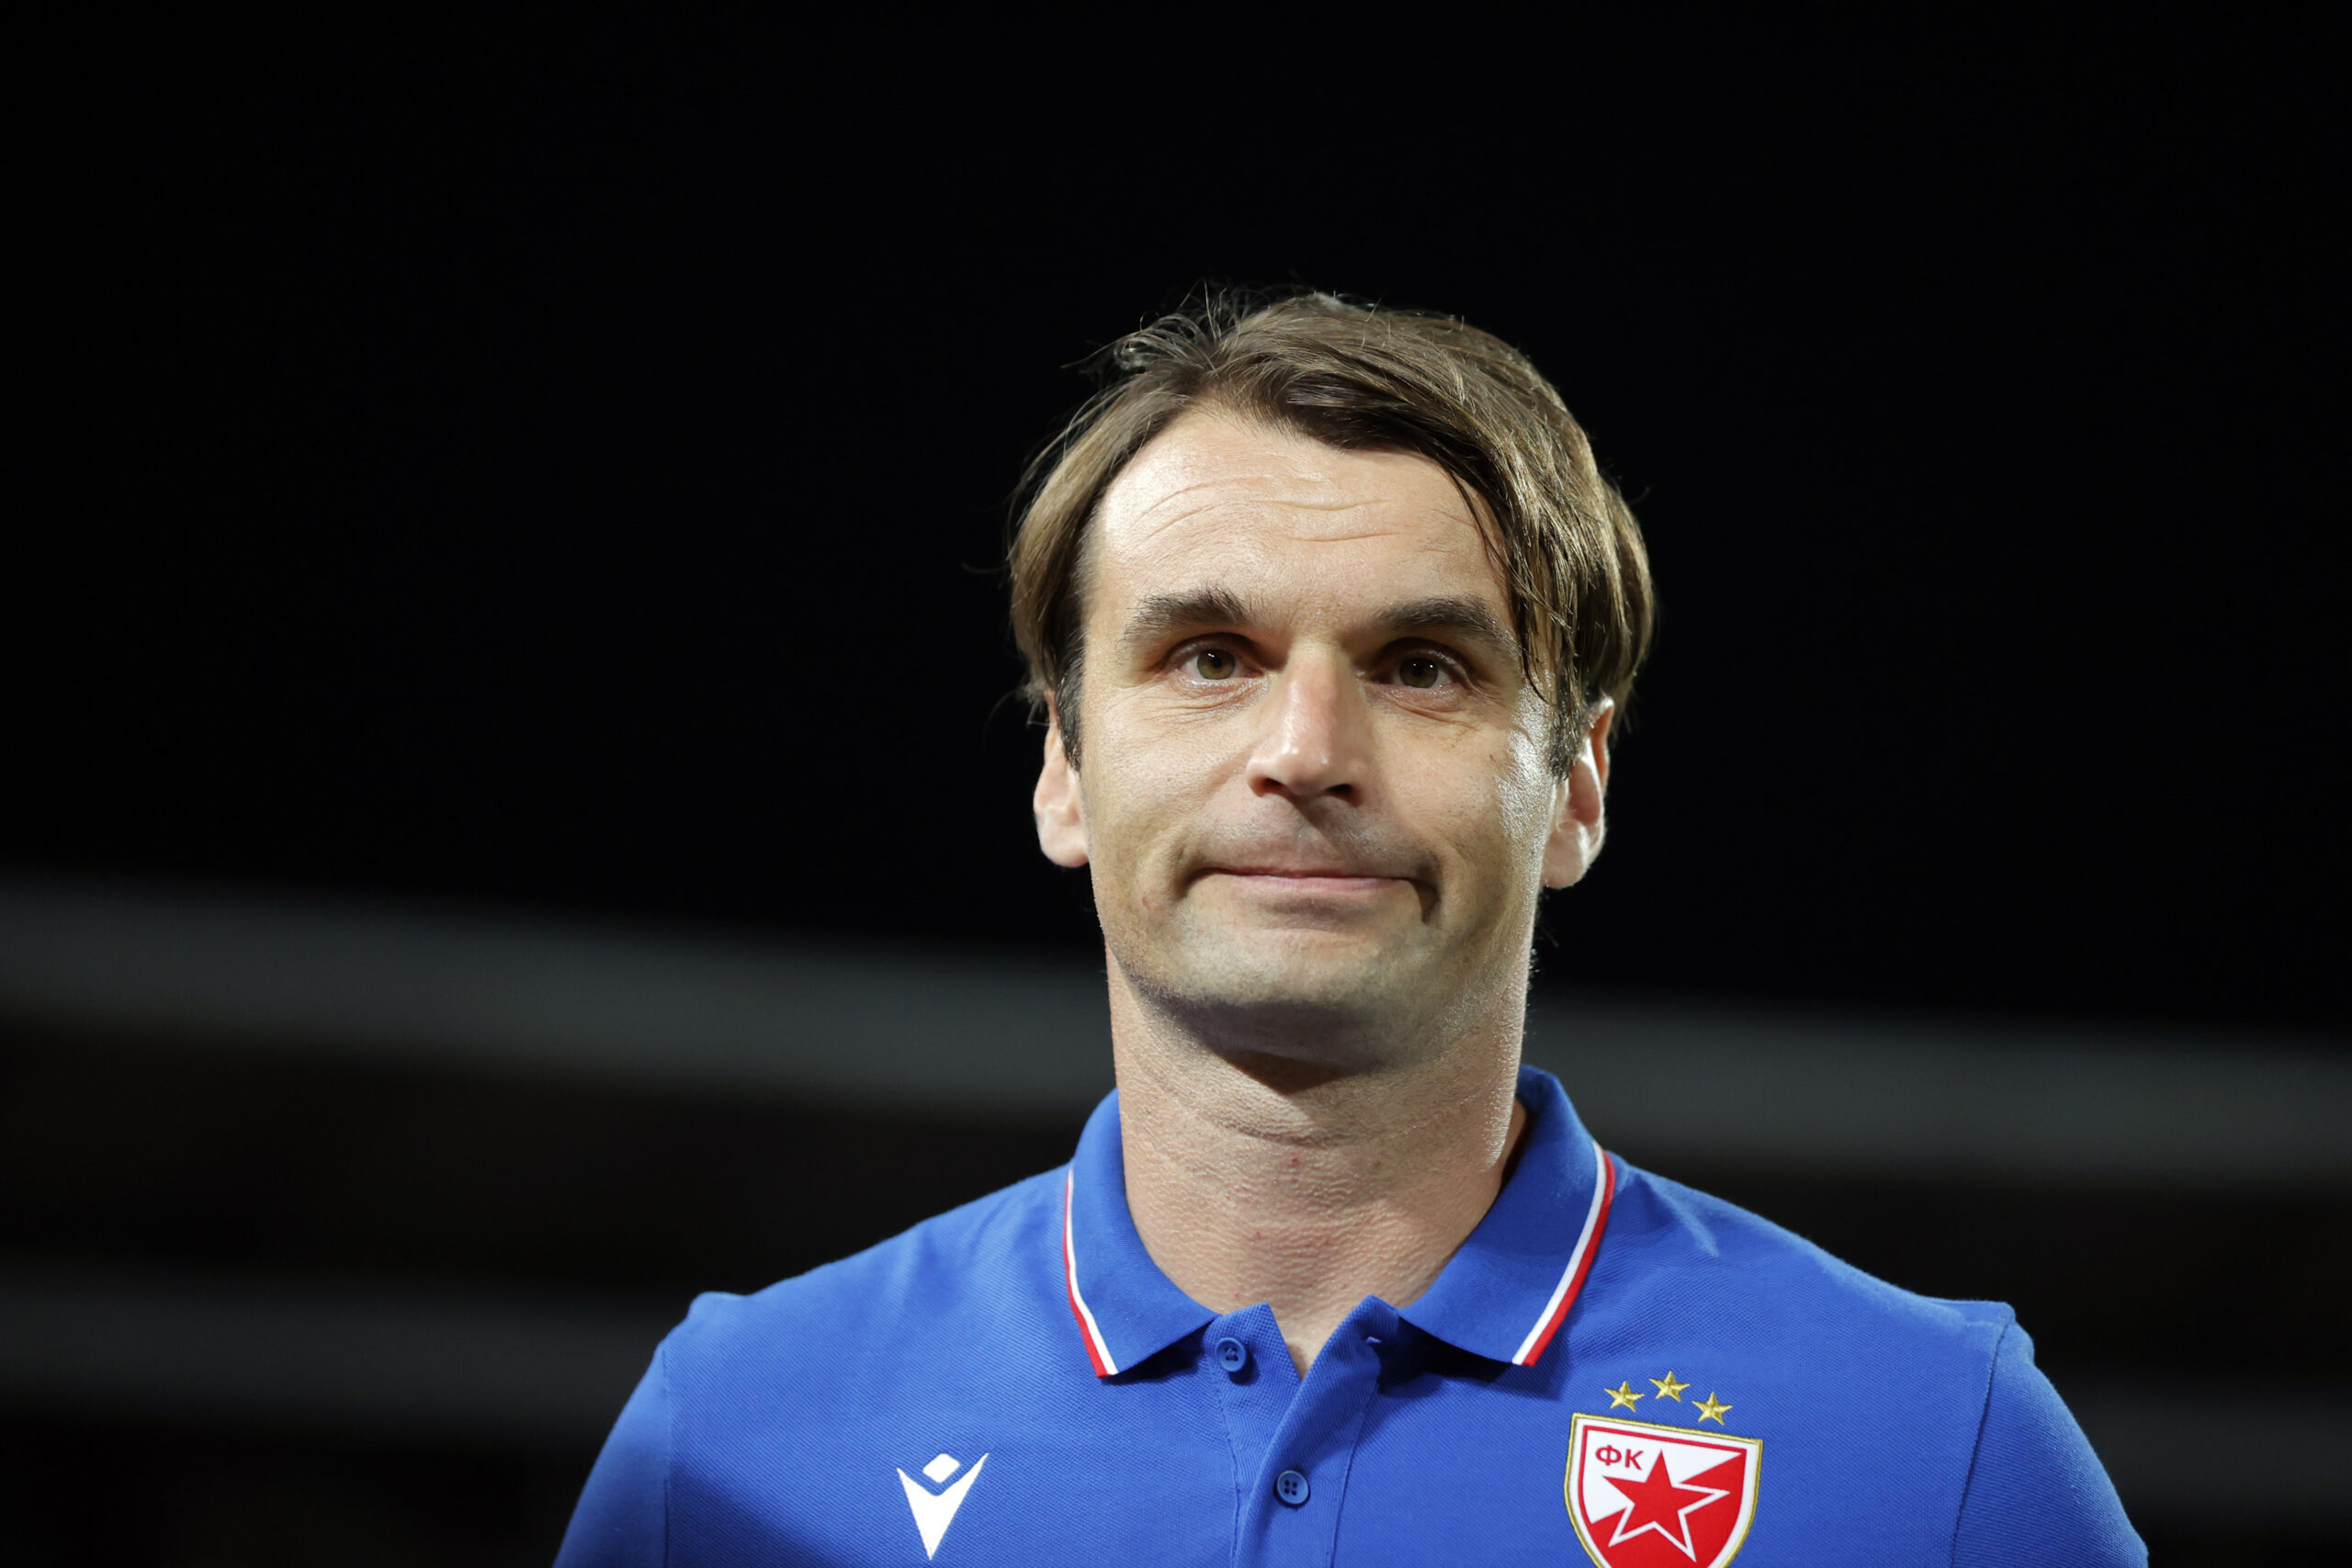 Crvena Zvezda 2022/23: Their tactics under Miloš Milojević - scout